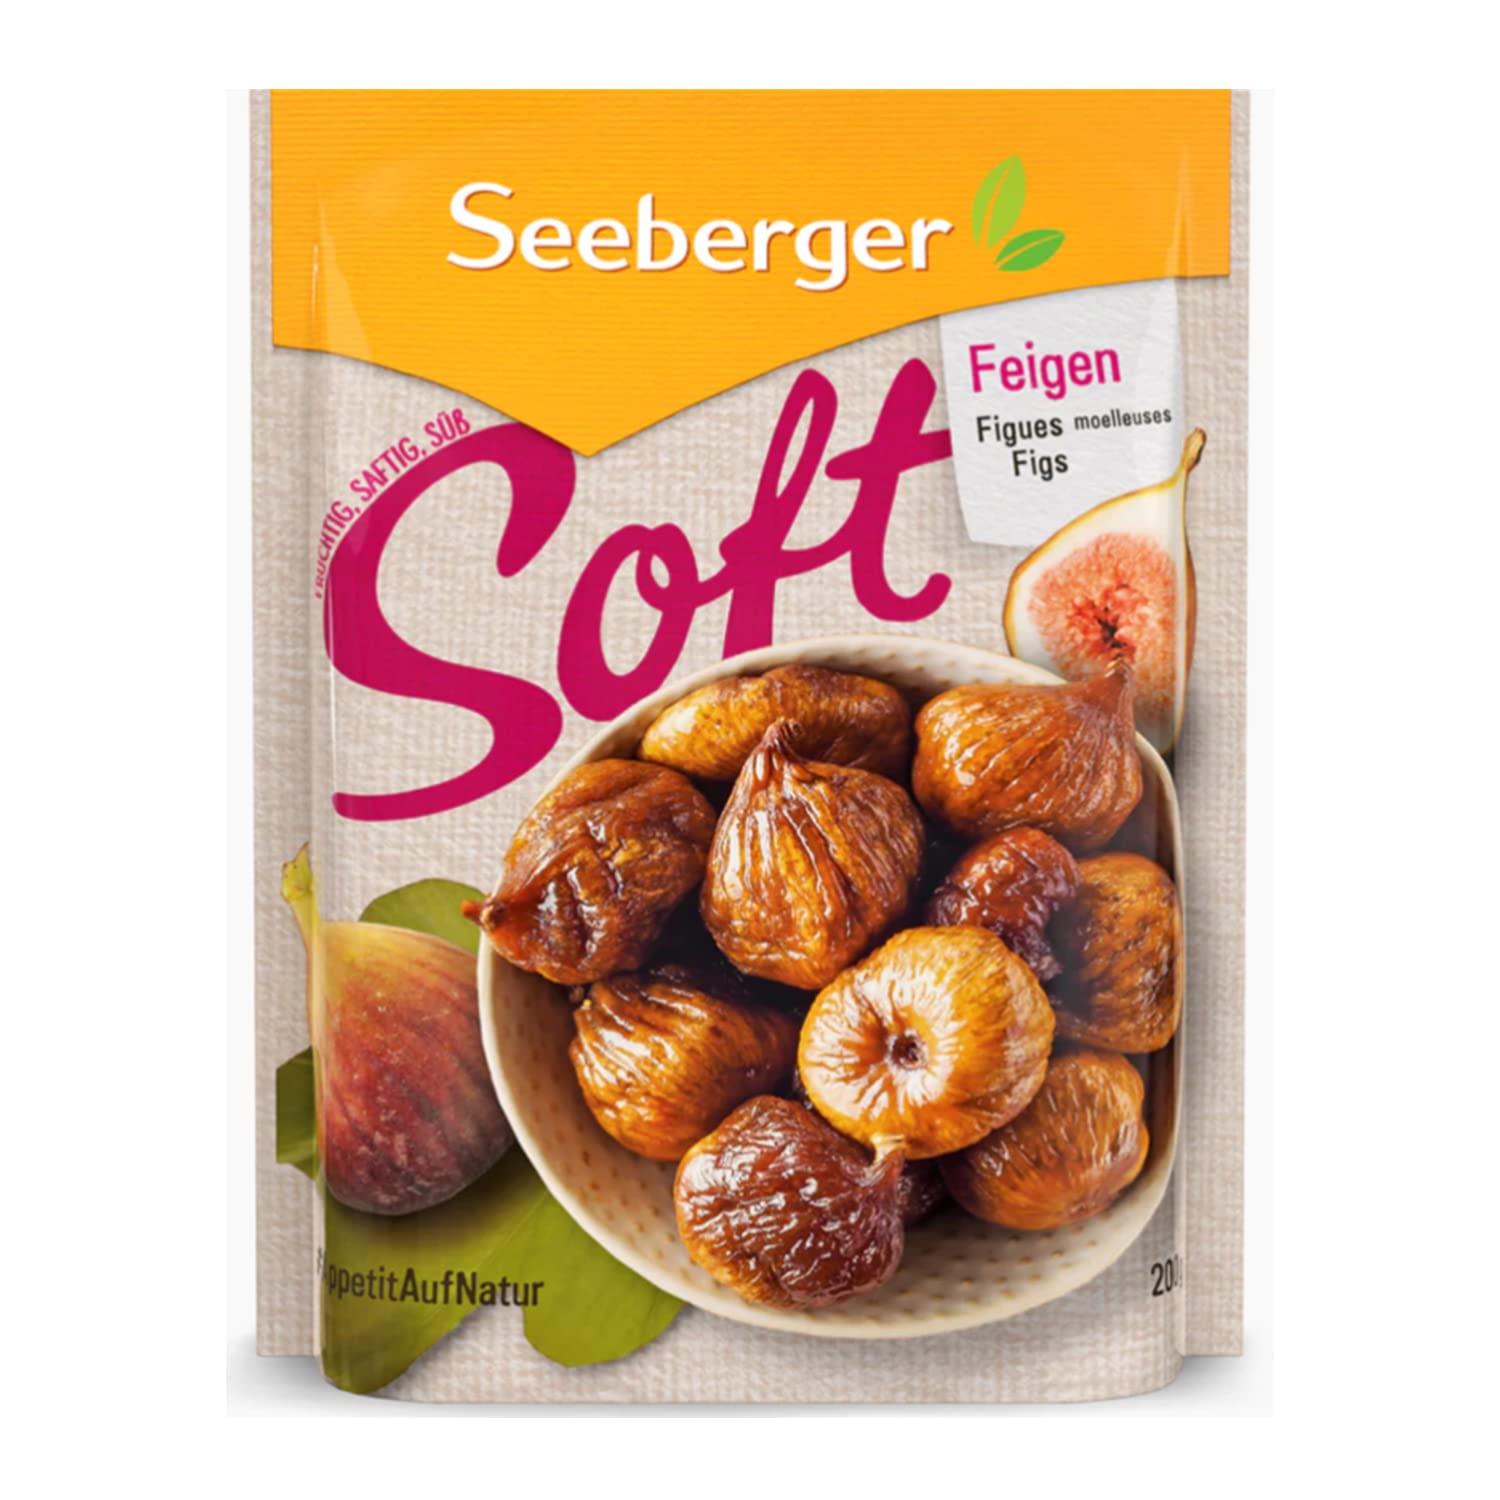 Seeberger Soft-Feigen 13er Pack, Honigsüße Bergfeigen mit kernigem Fruchtfleisch - für ernährungsbewusste Genießer - essfertig, getrocknet & pasteurisiert - ohne Zuckerzusatz, vegan (13 x 200 g)